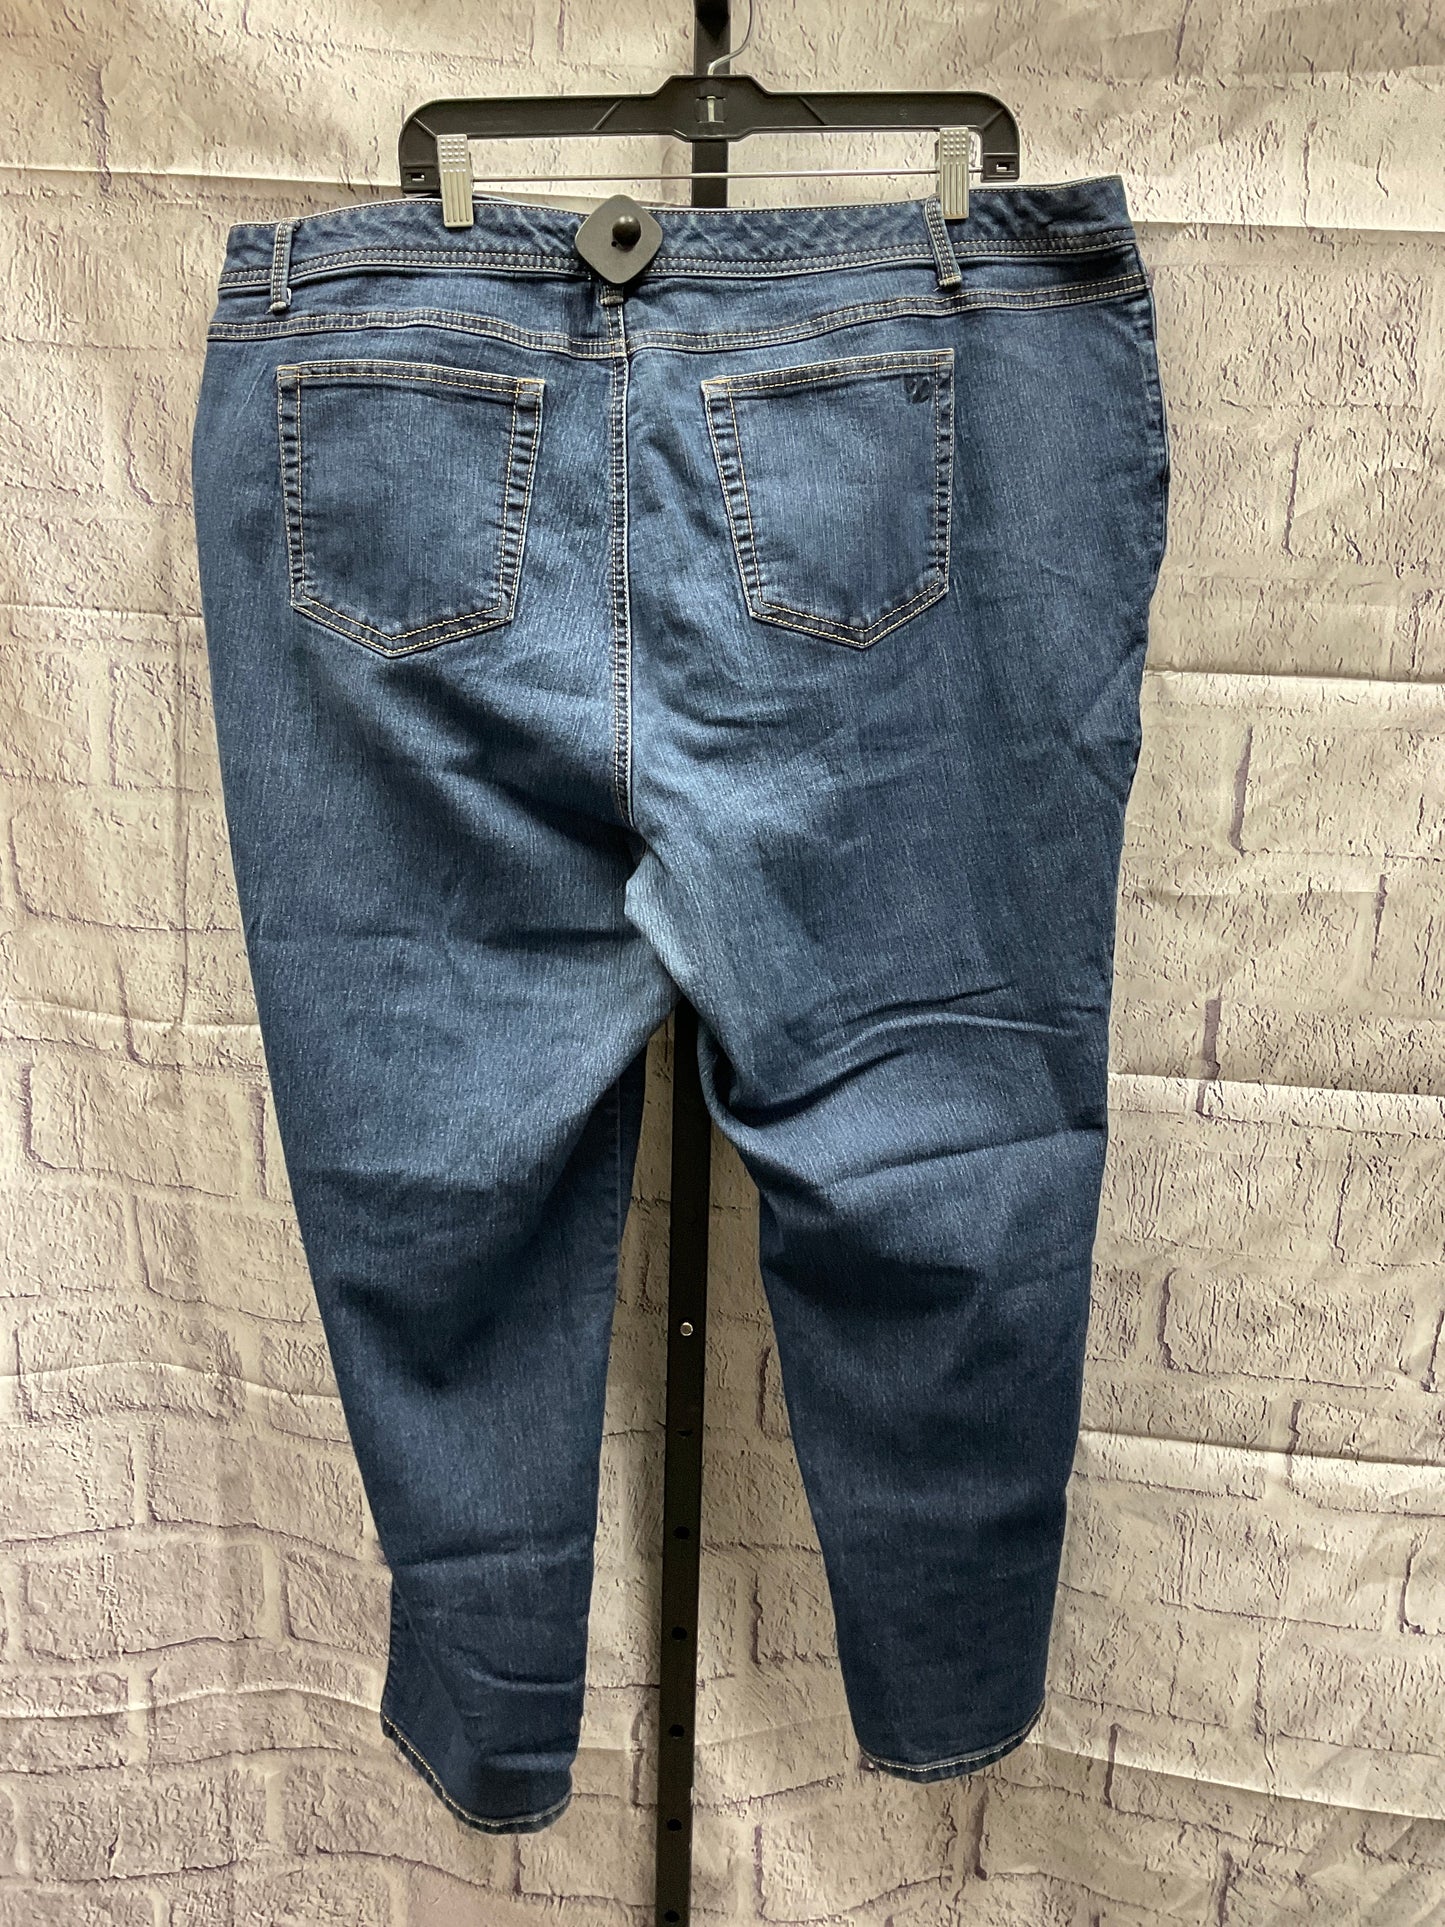 Jeans Skinny By W62  Size: 22womens